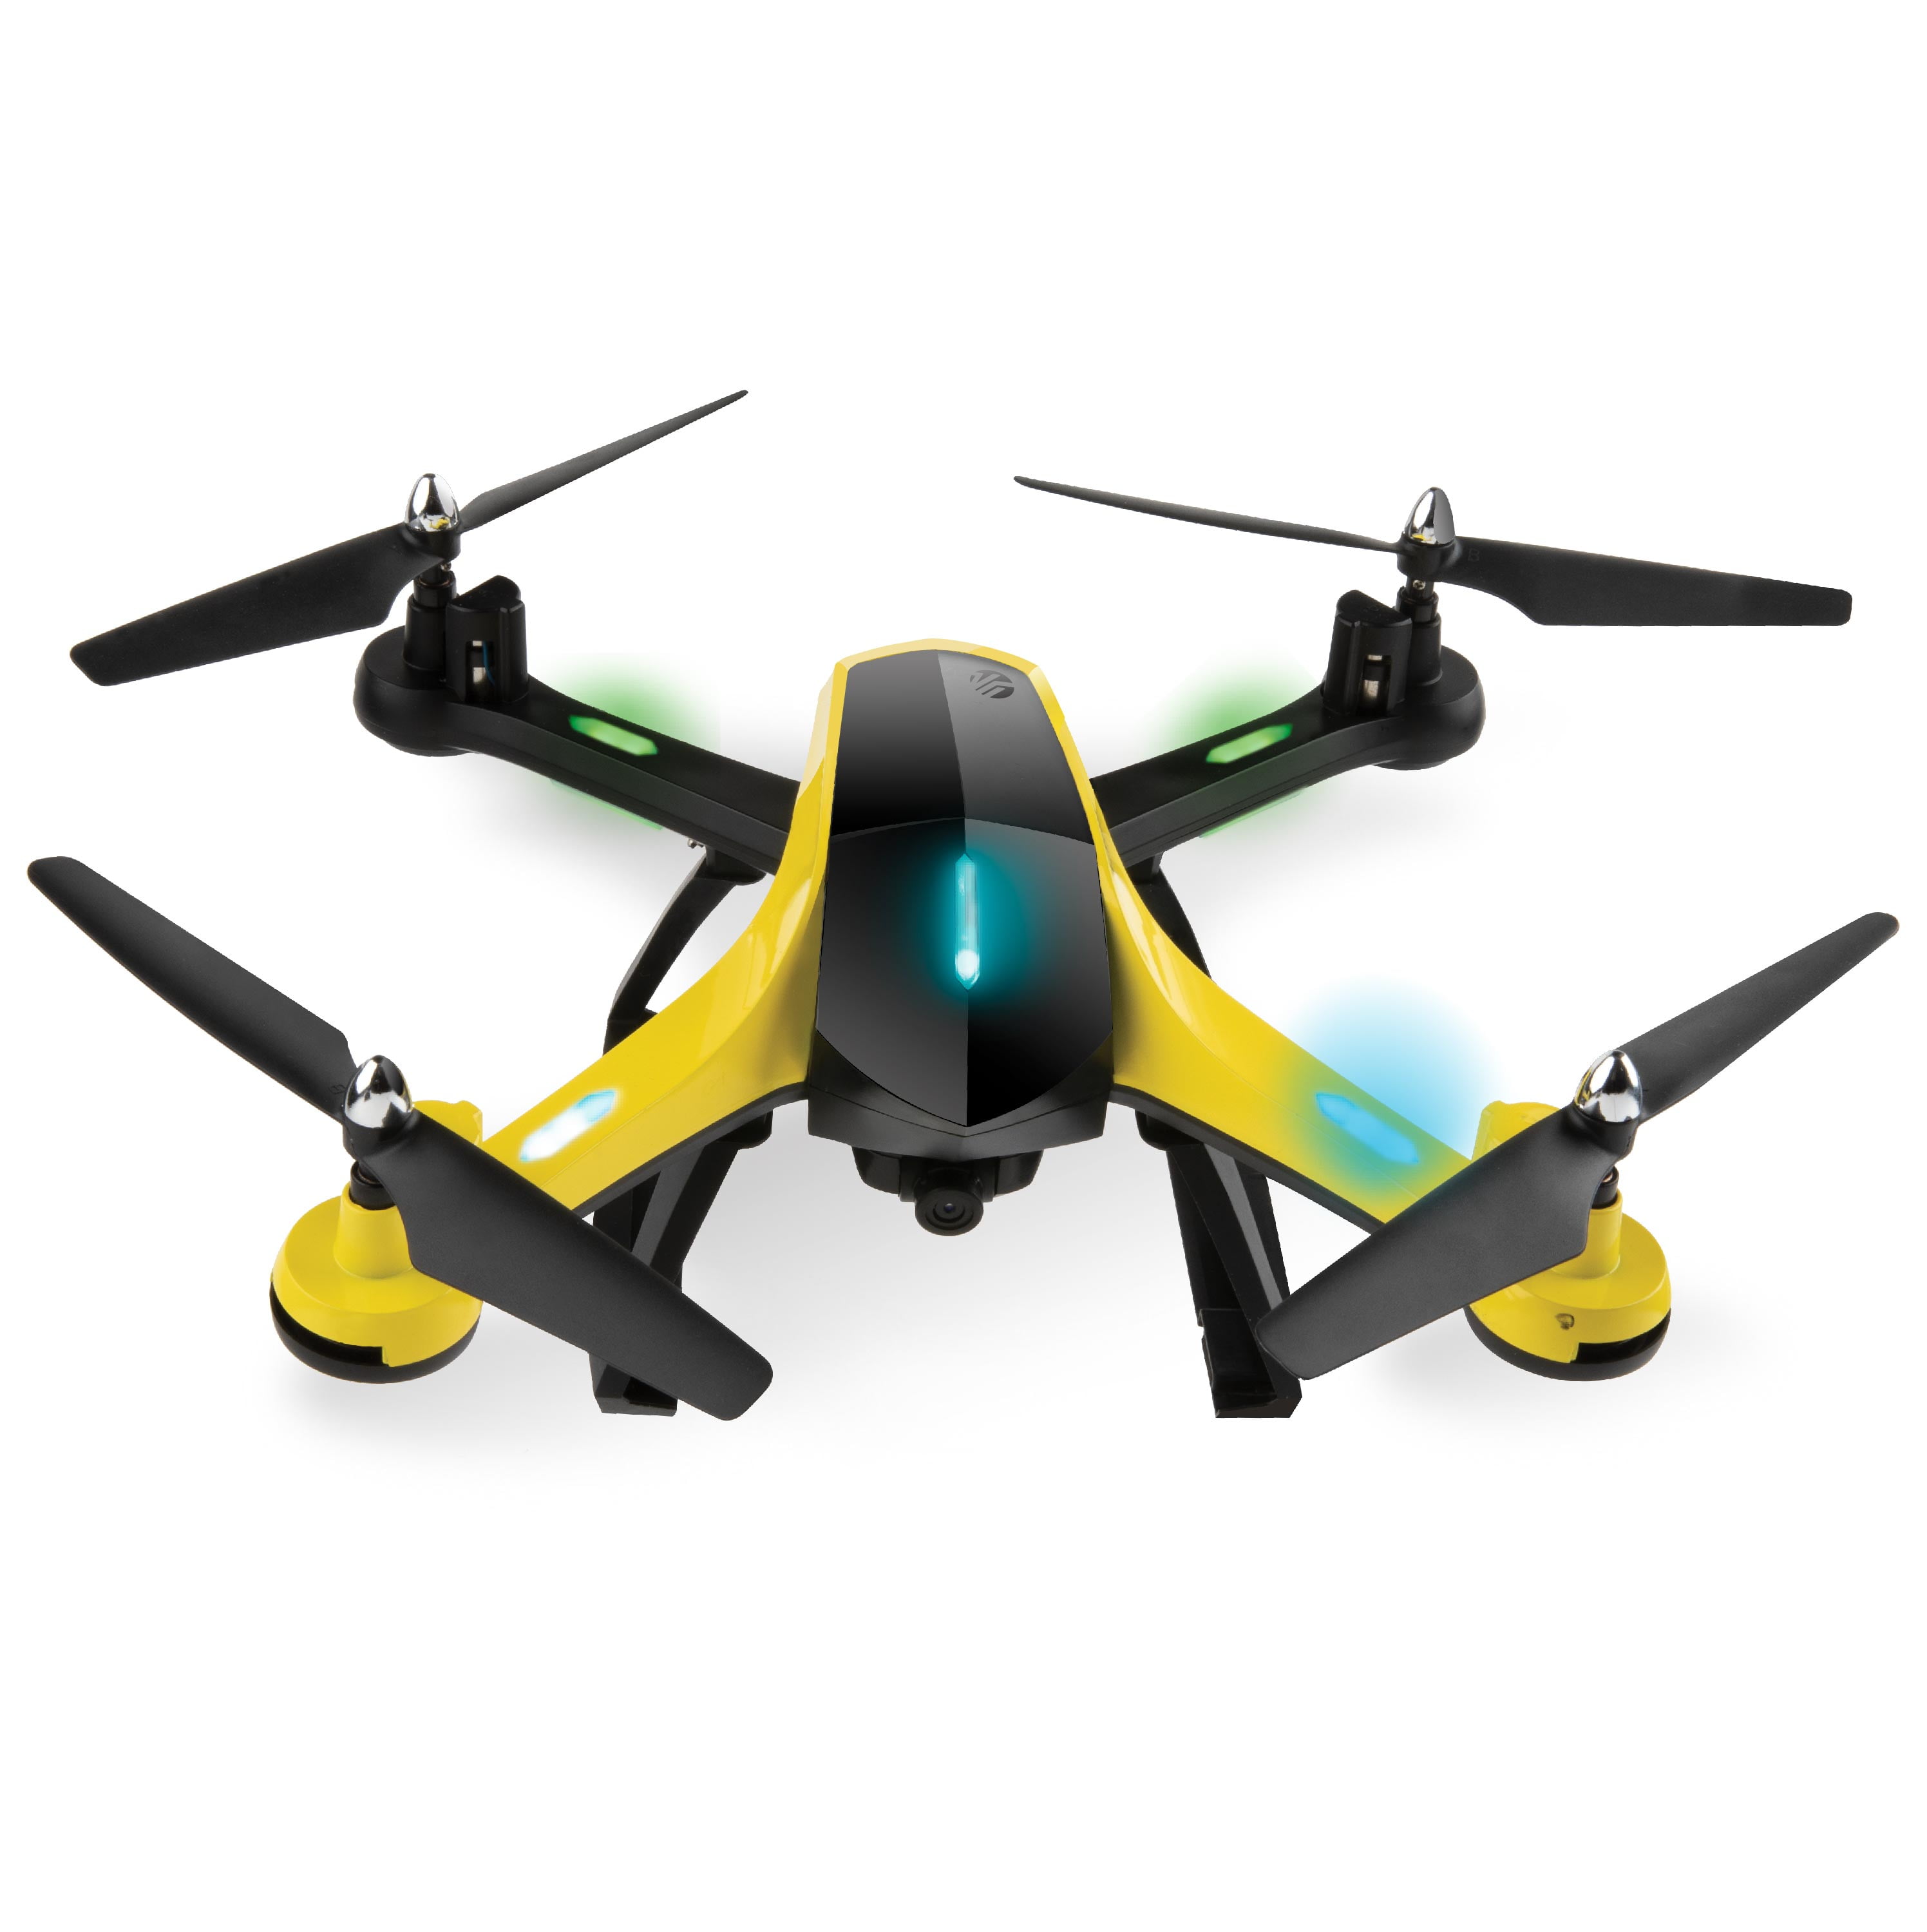 skye drone website